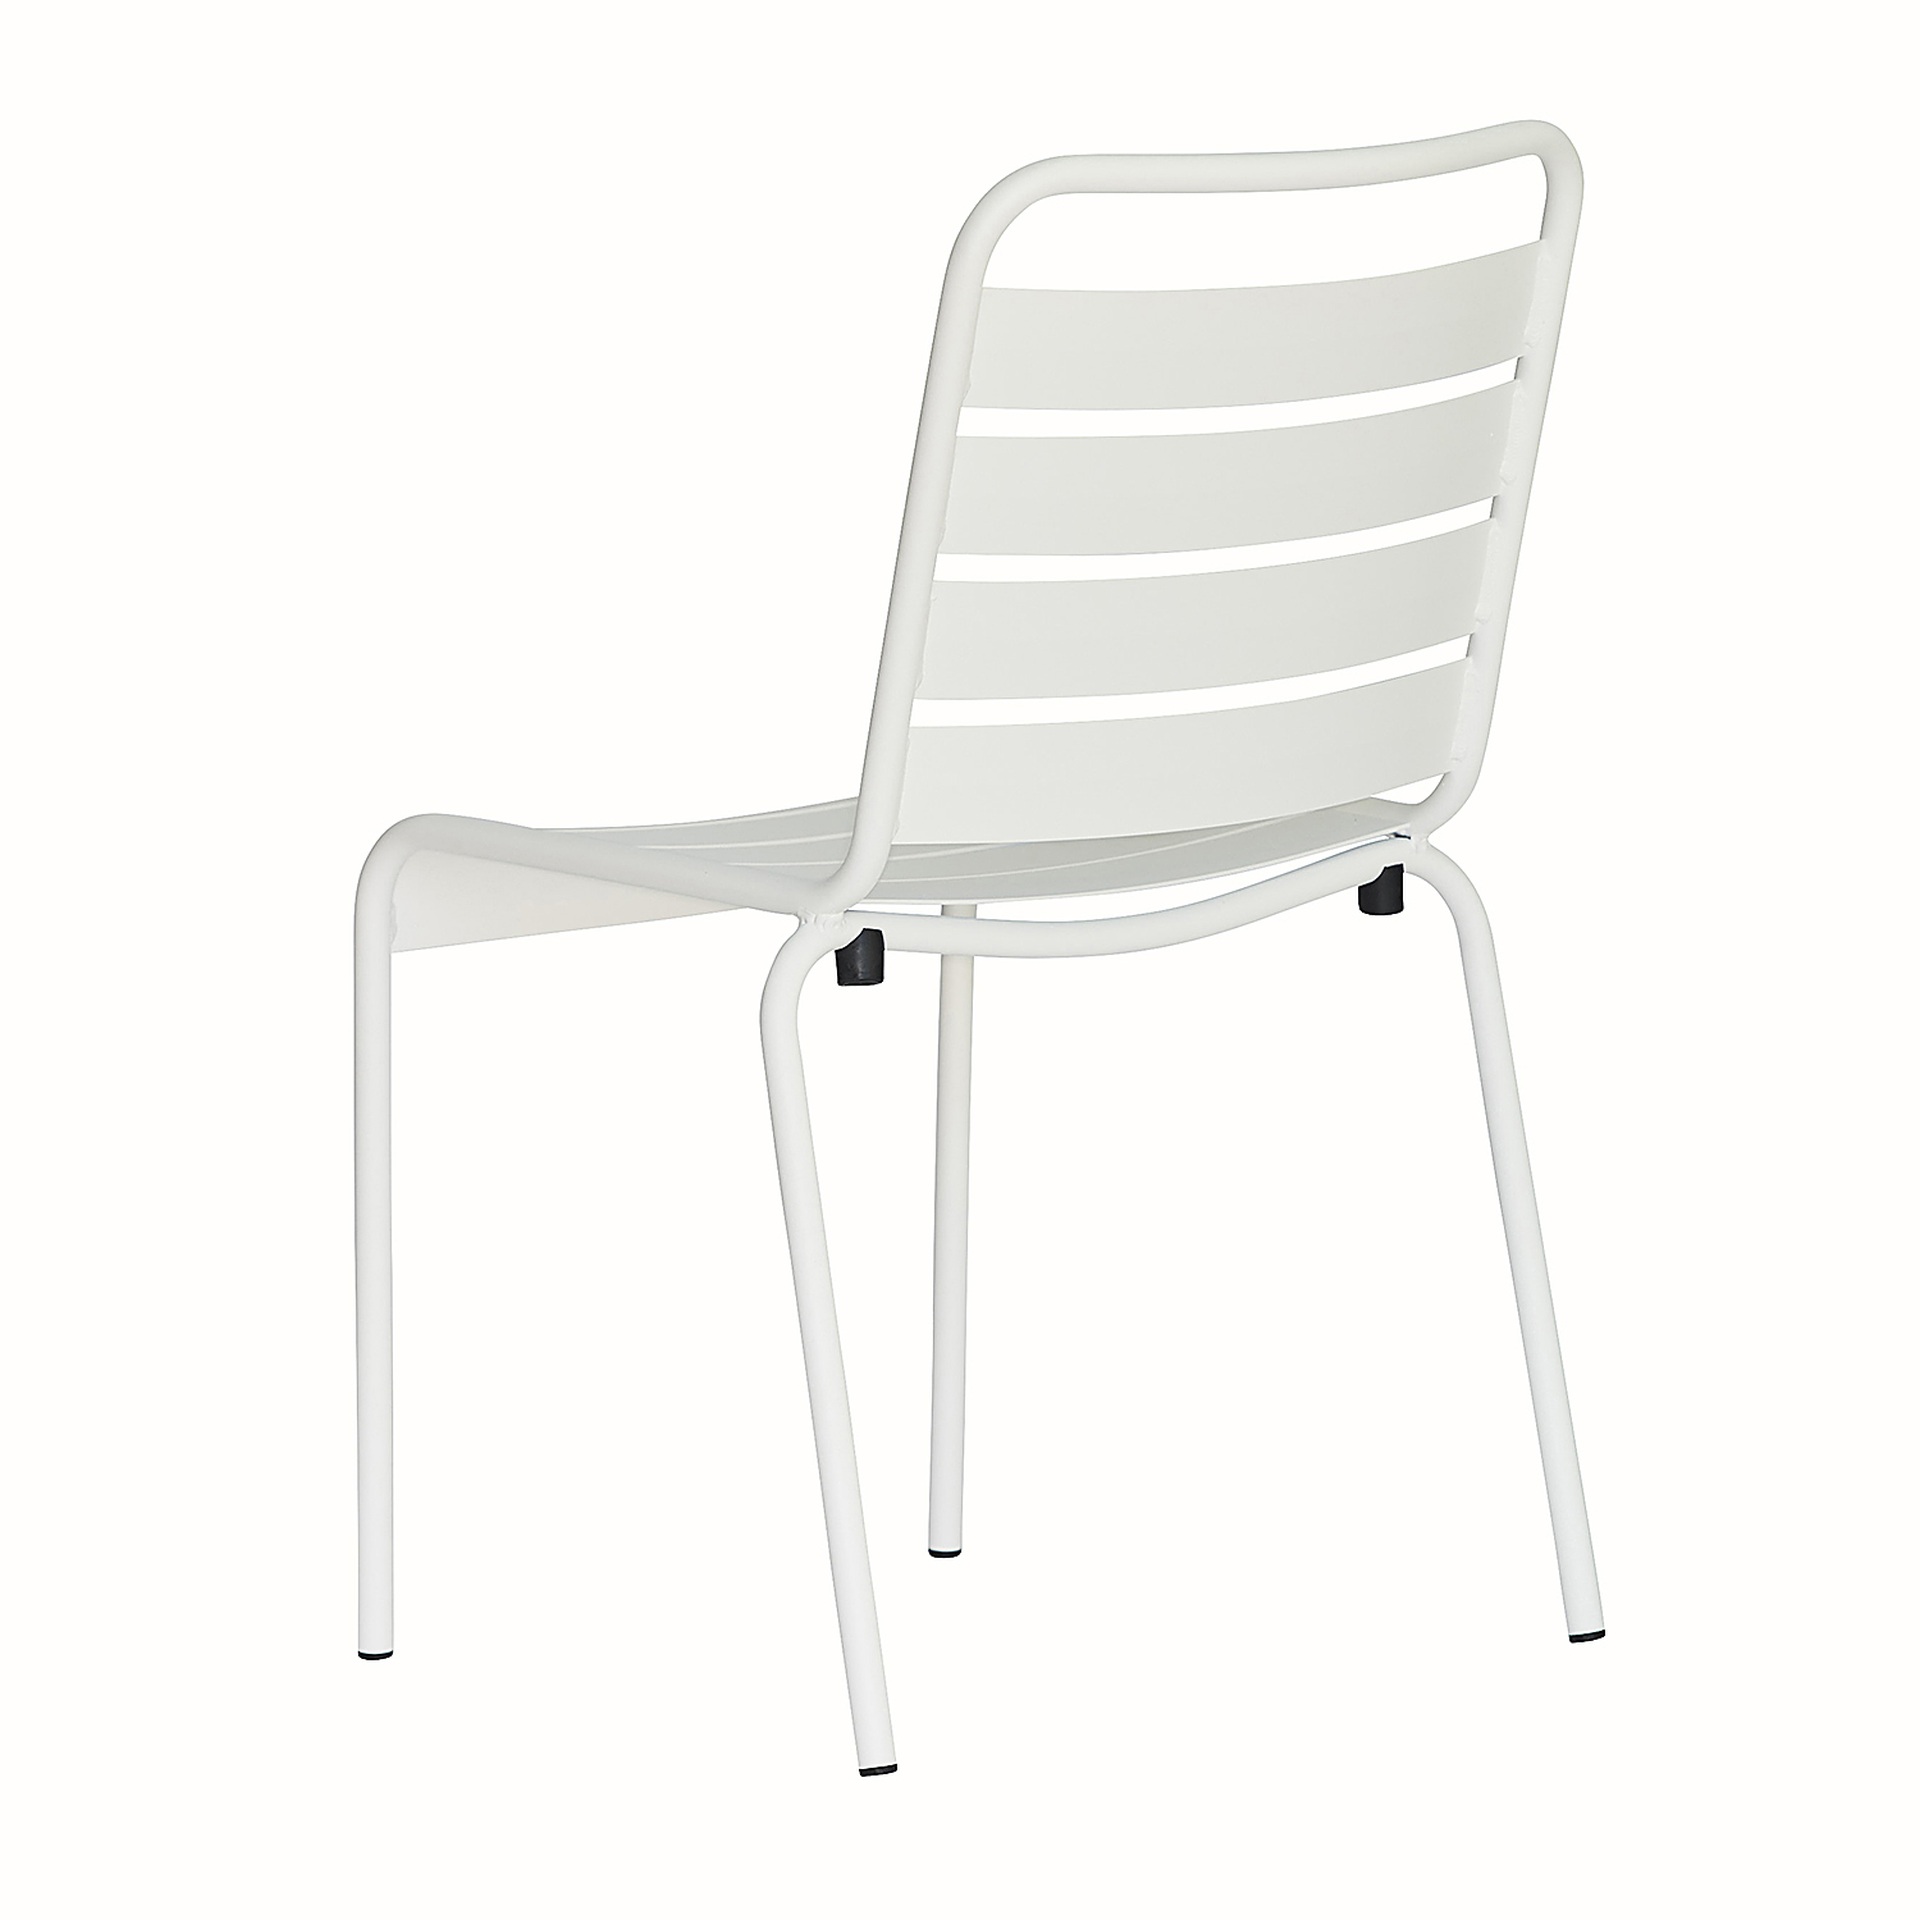 Der moderne Stapelstuhl Mya wurde aus Aluminium gefertigt und hat einen weißen Farbton. Designet wurde der Stuhl von der Marke Jan Kurtz.